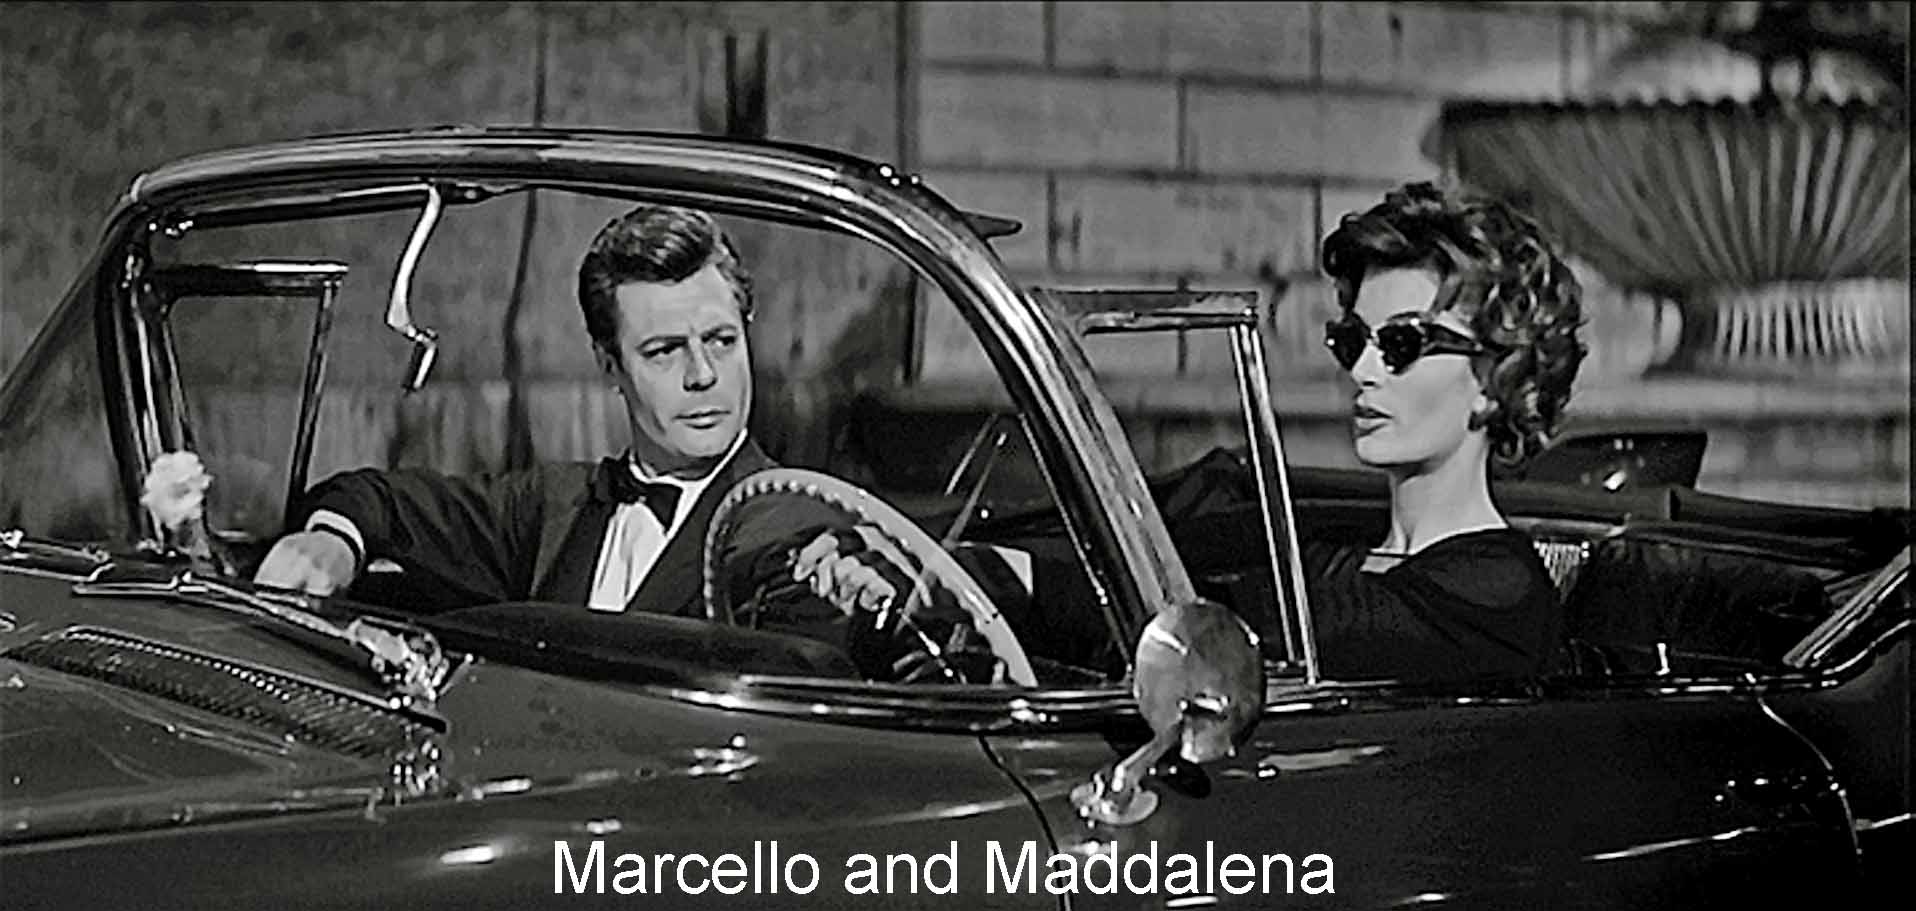 Marcello and Maddalena